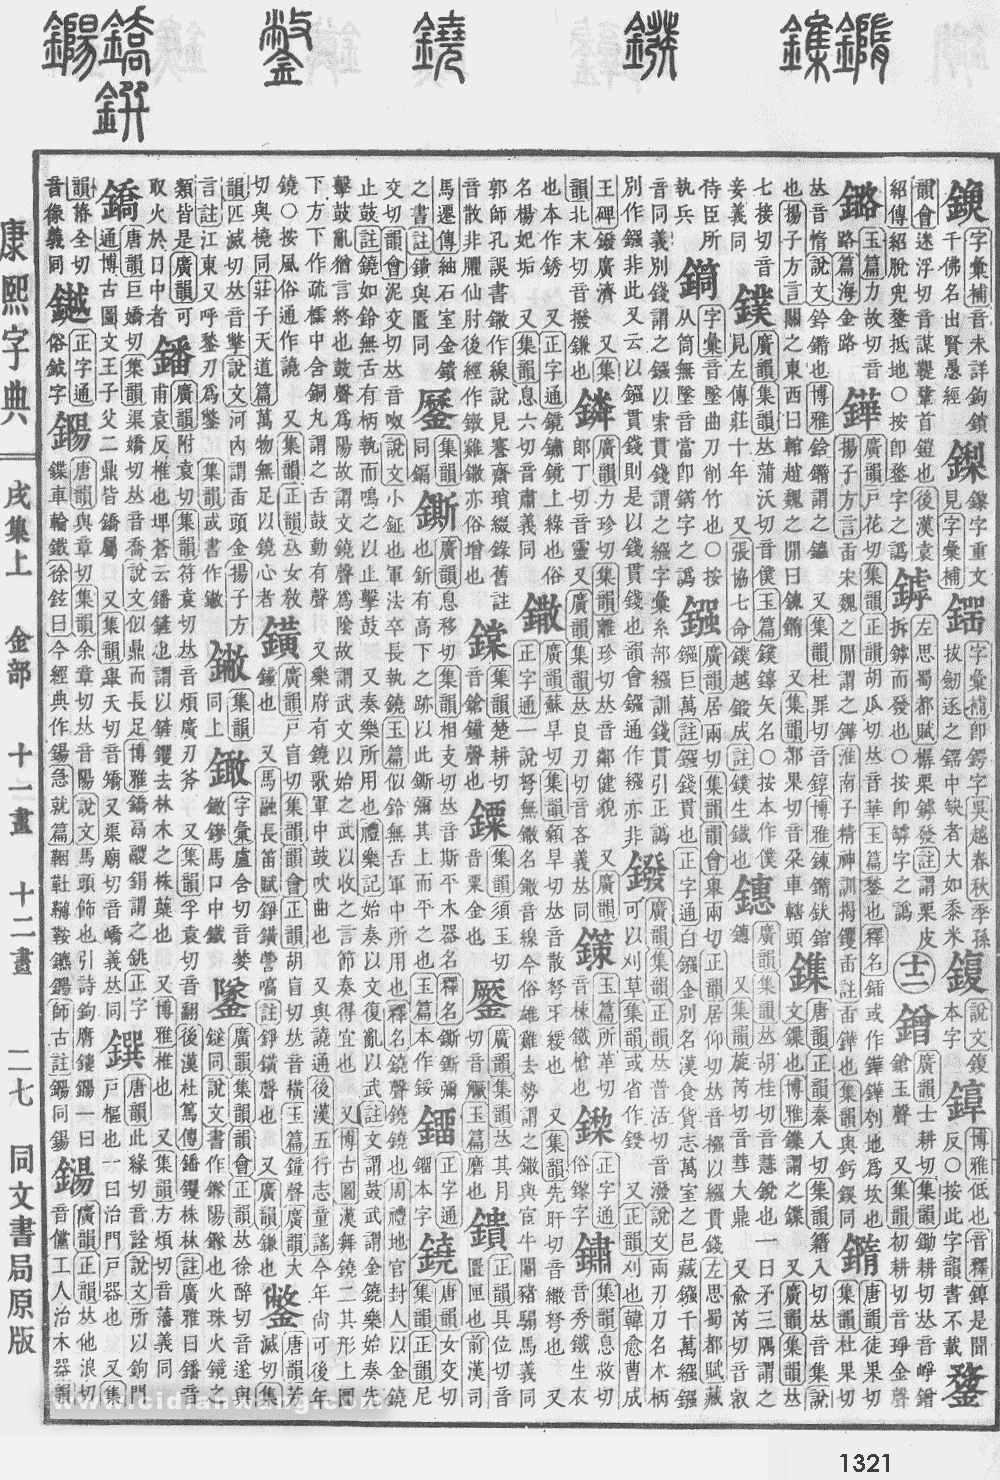 康熙字典掃描版第1321頁